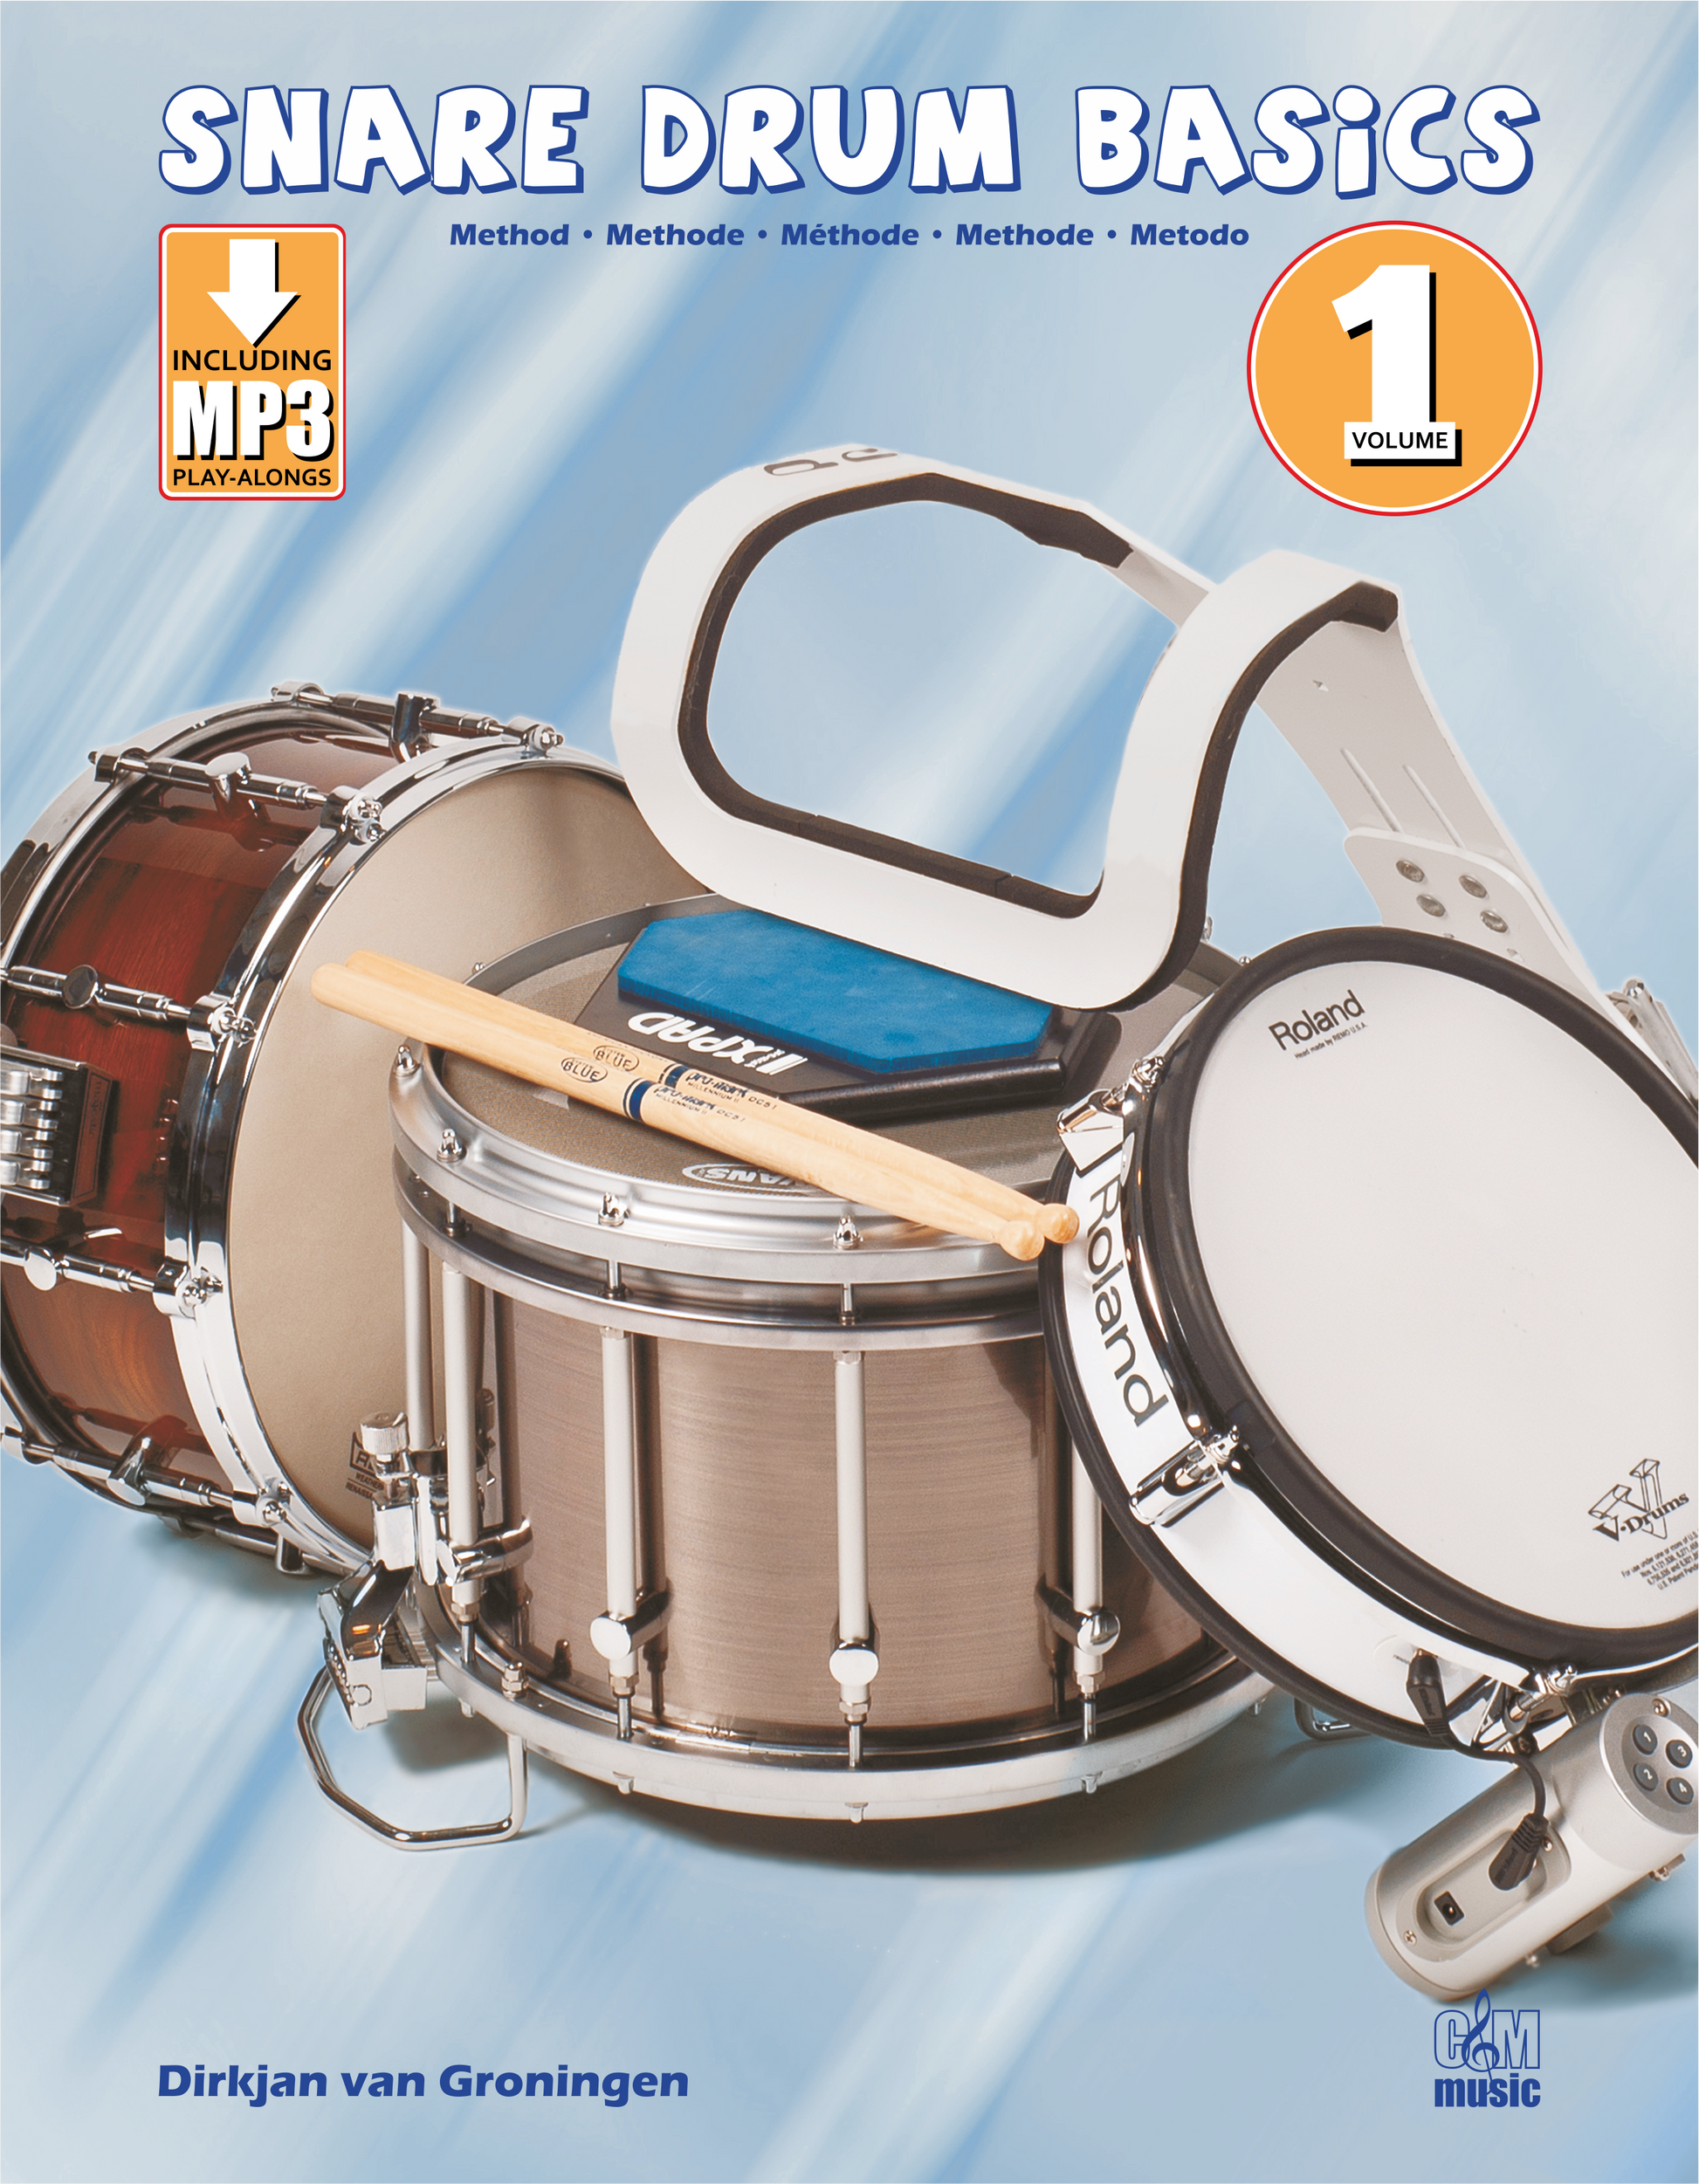 Snare Drum Basics Method 1 | Dirkjan van Groningen